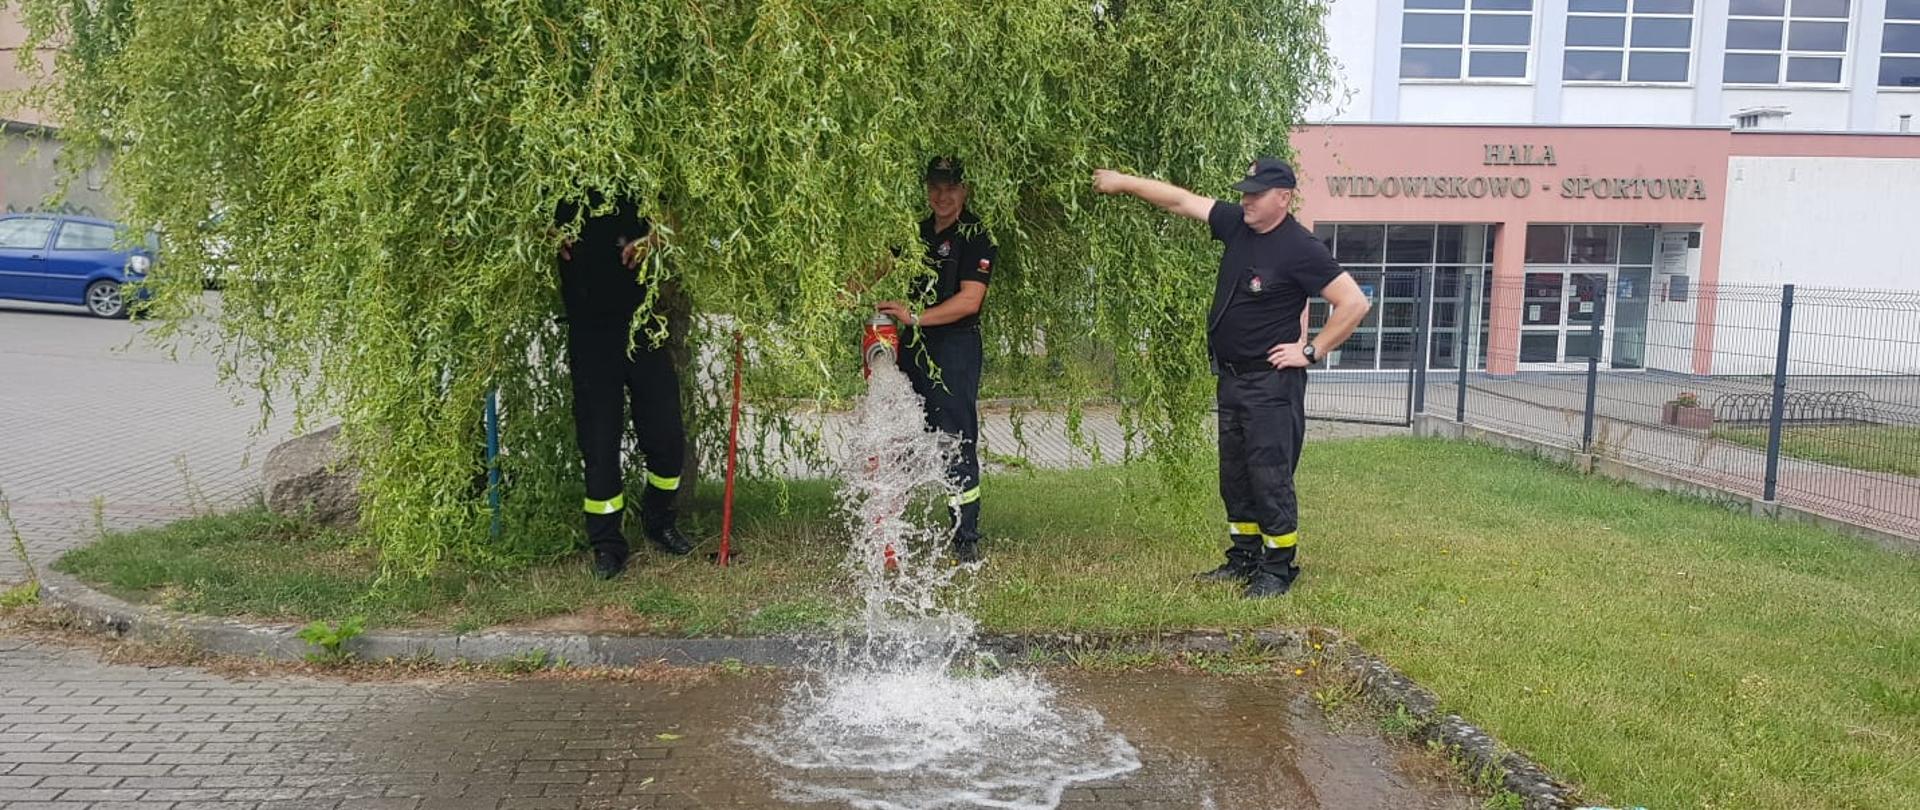 Zdjęcie przedstawia trzech strażaków którzy sprawdzają działanie hydrantu po przez jego odkręcenie.